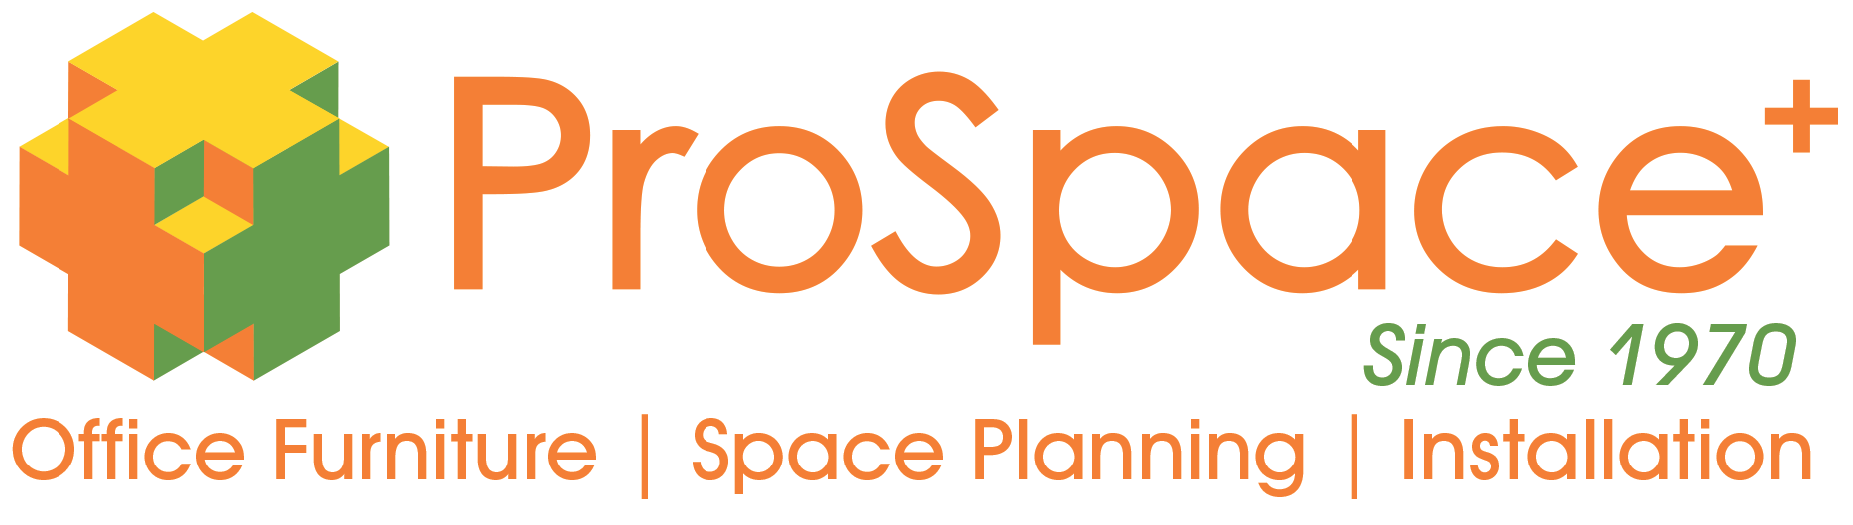 Image: Prospace Logo